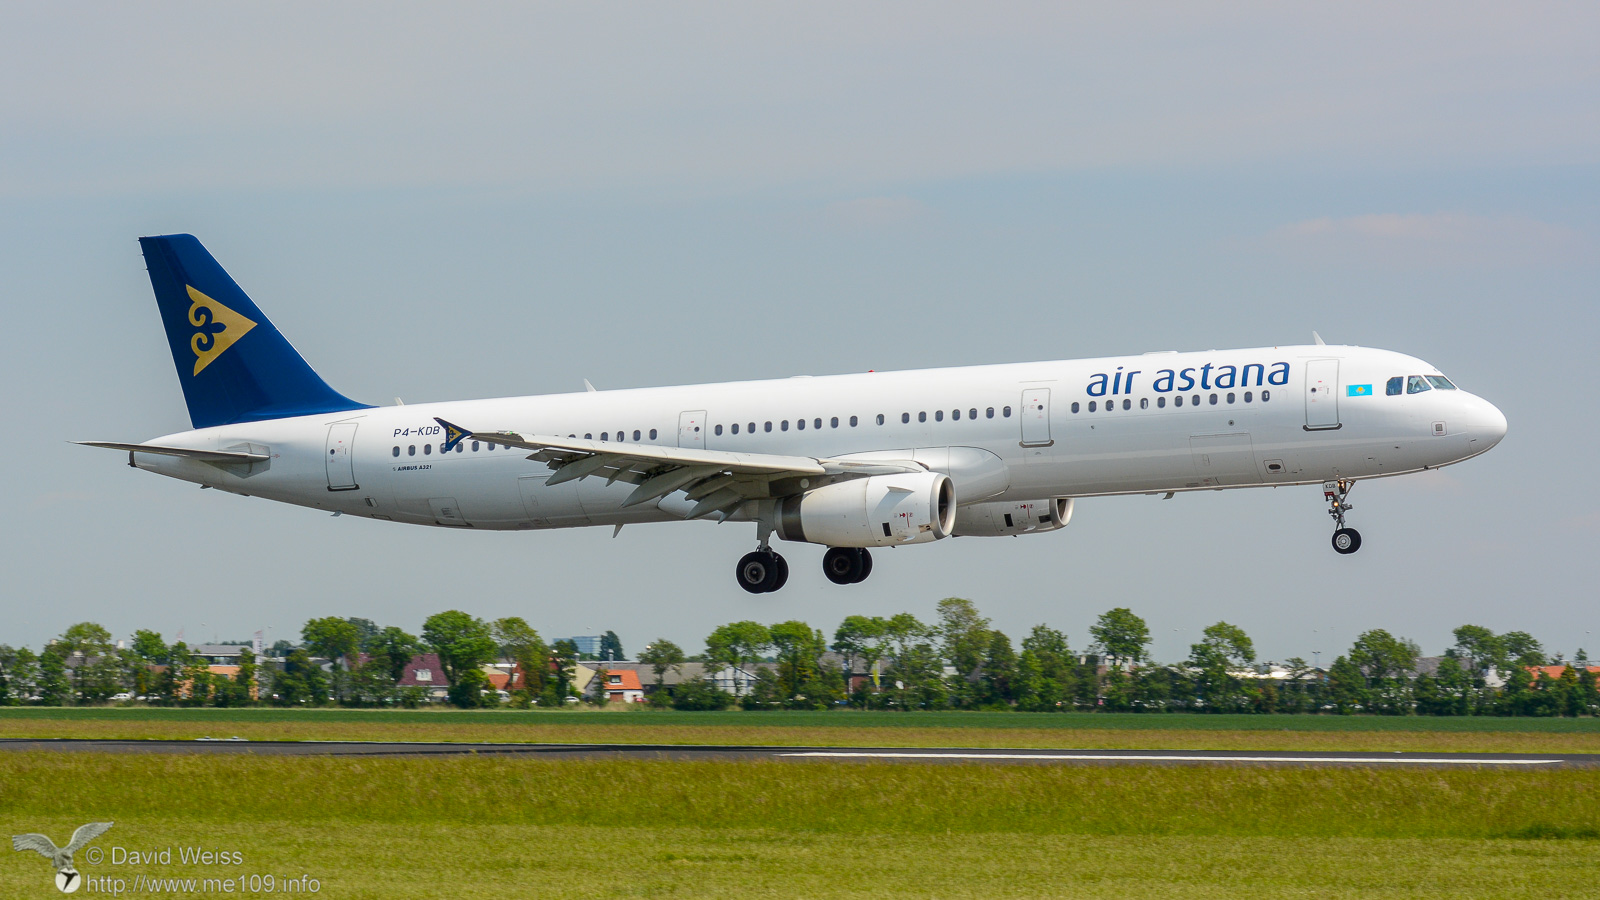 Airbus_A321_DSC_1823.jpg